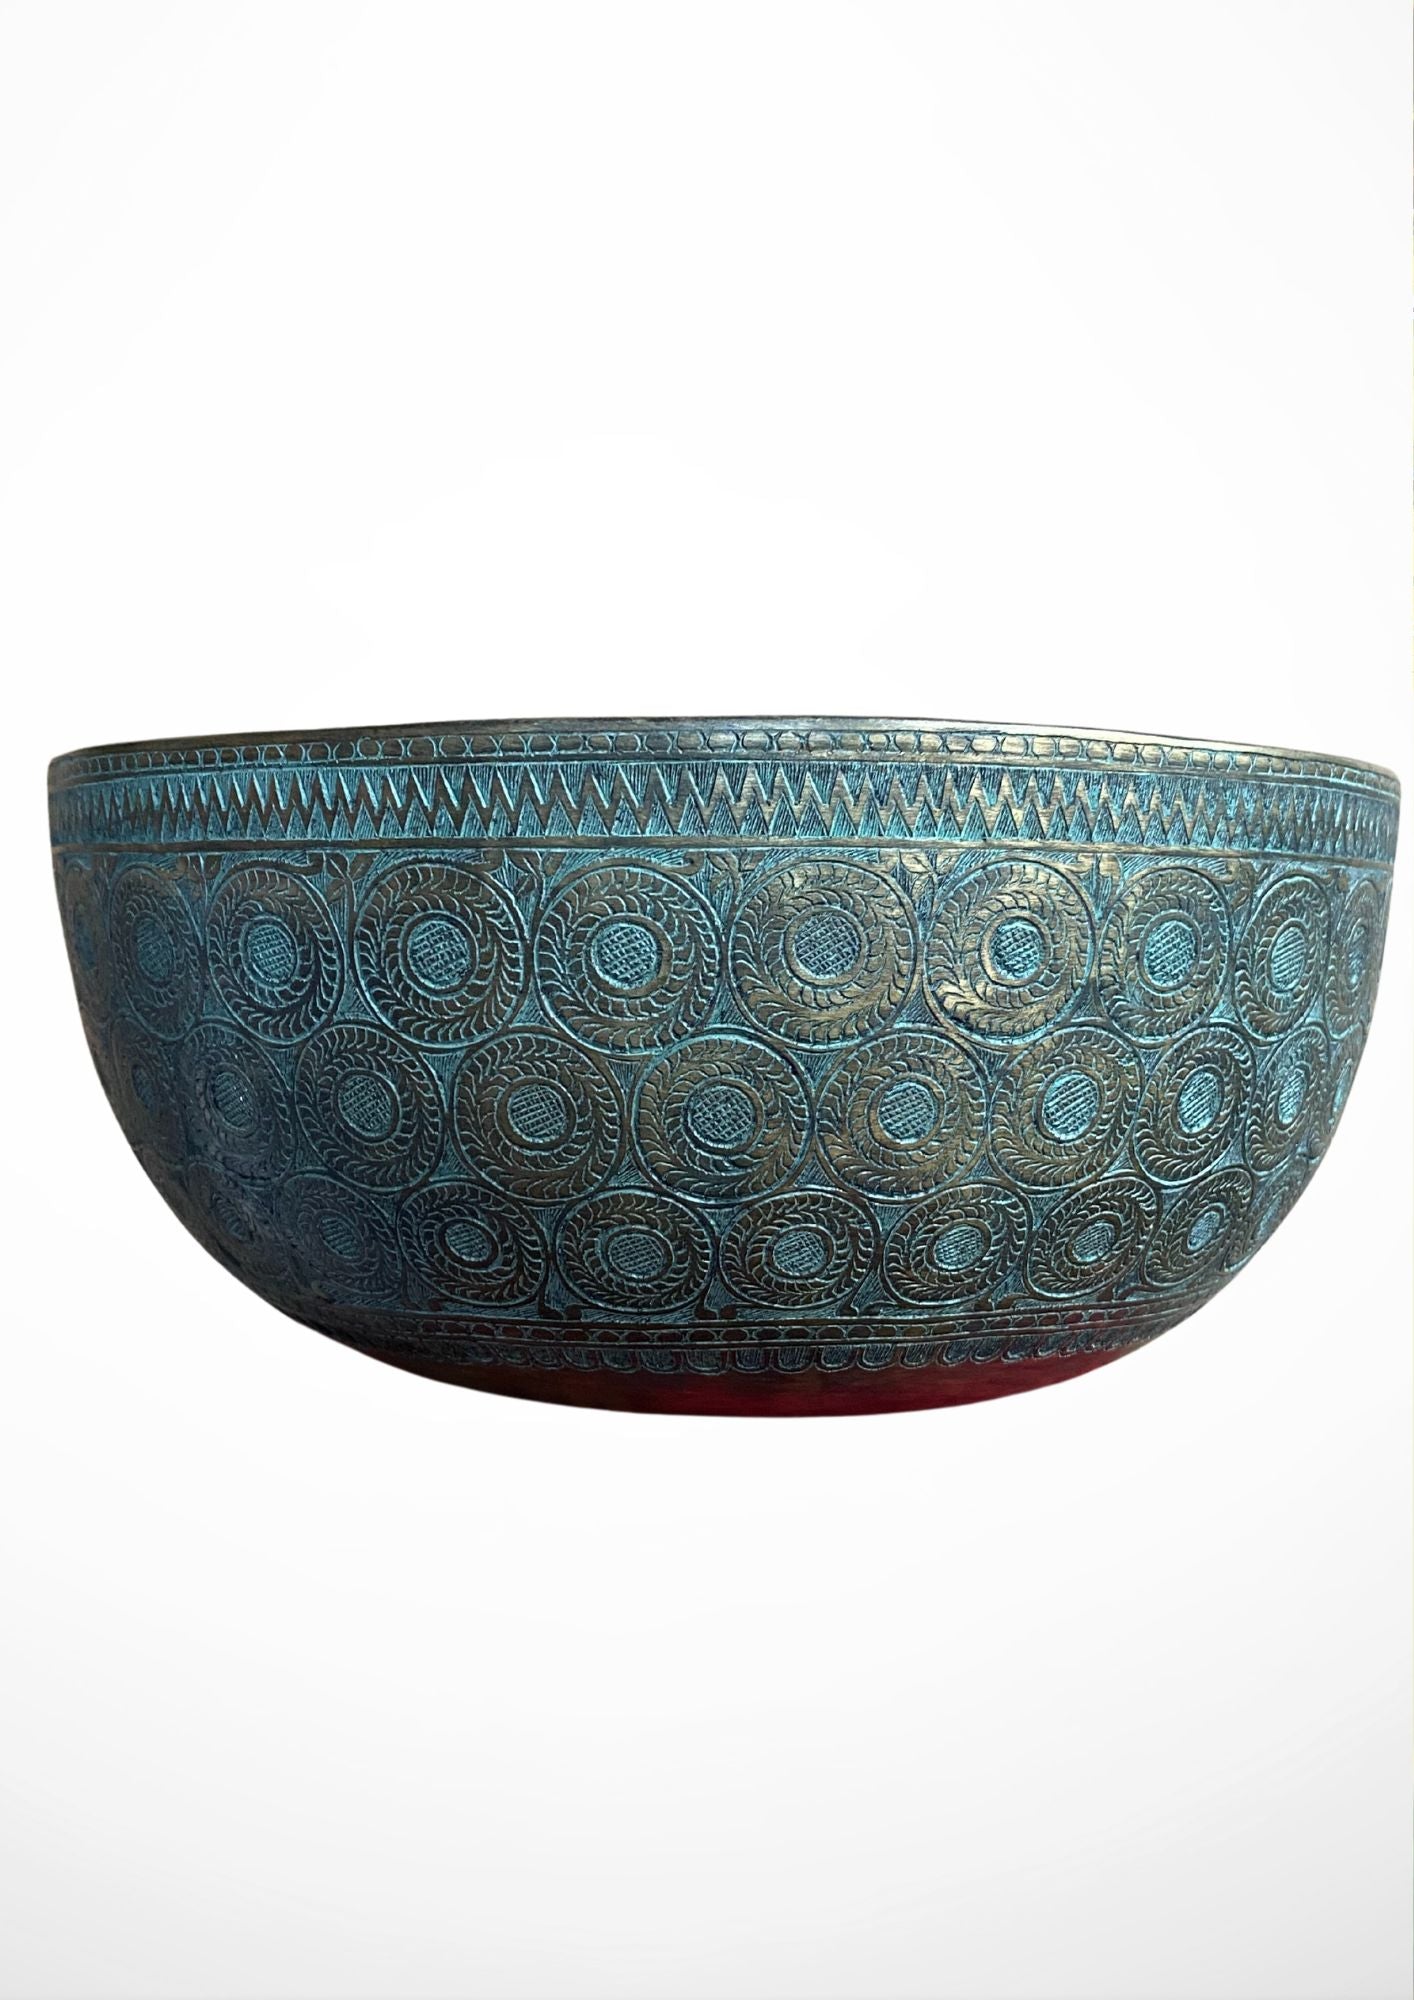 Antique Carved Tibetan Singing Bowl for meditation.